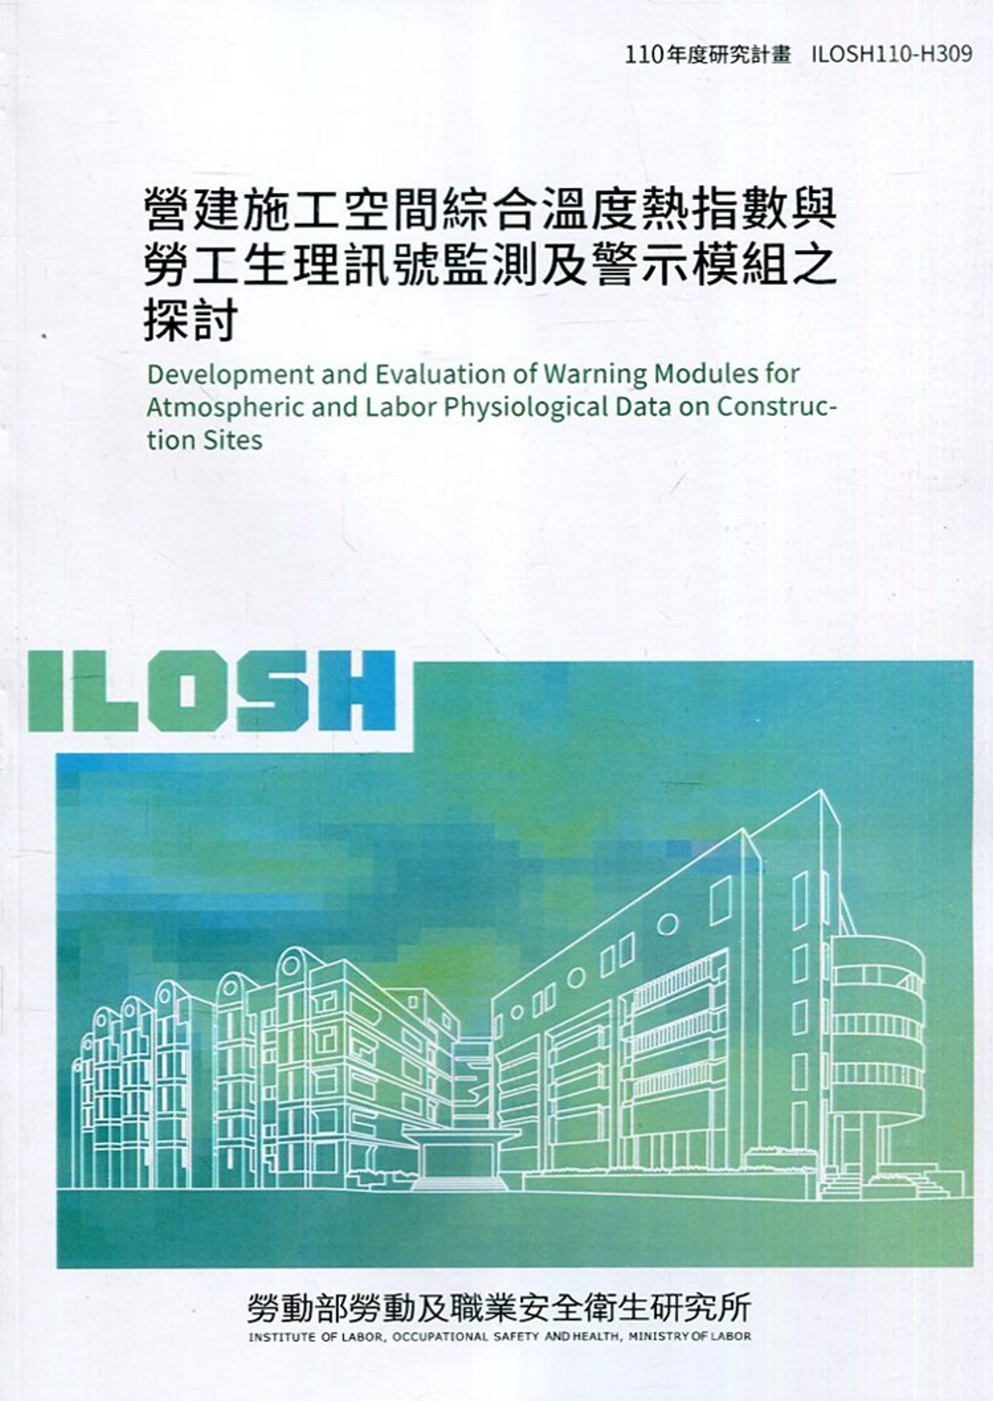 營建施工空間綜合溫度熱指數與勞工生理訊號監測及警示膜組之探討  ILOSH110-H309